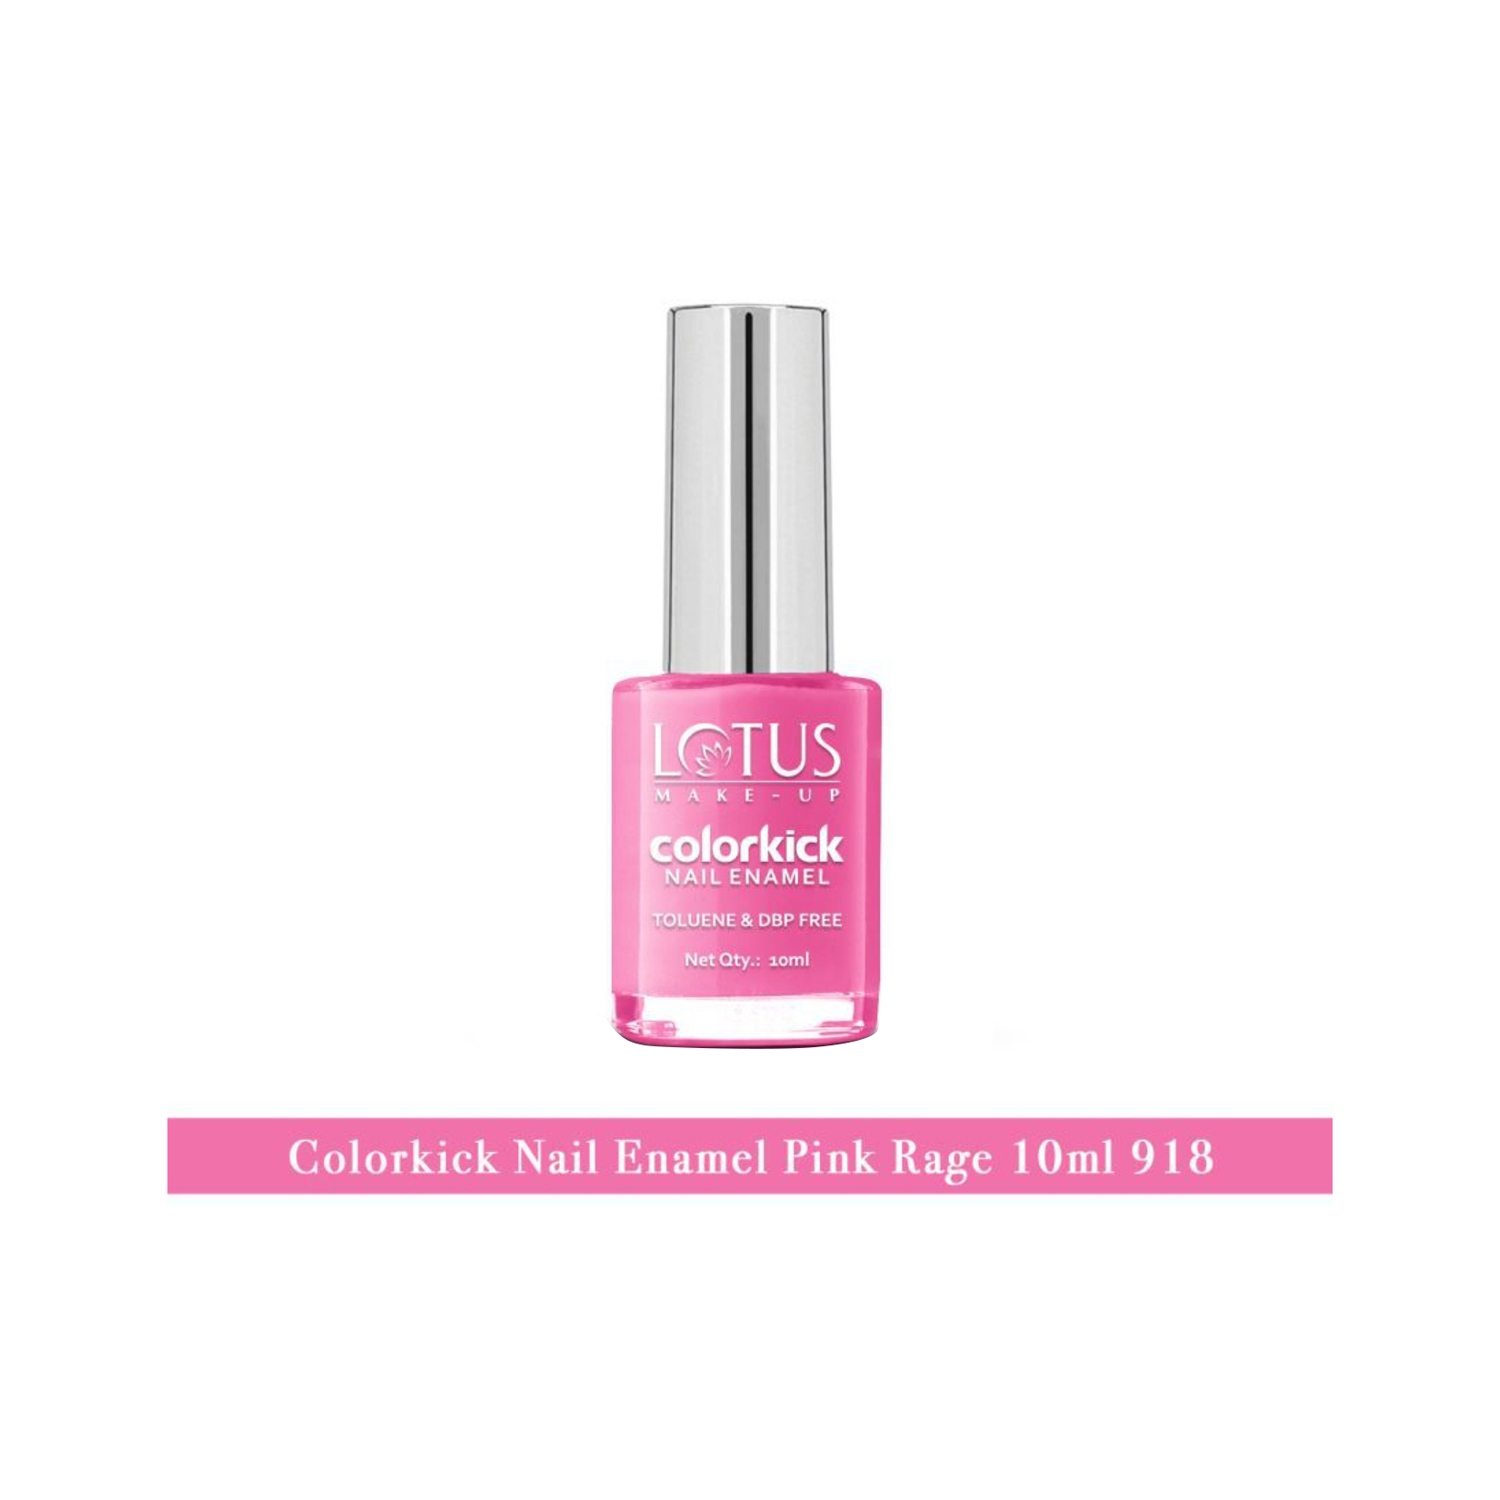 Lotus | Lotus Makeup Colorkick Nail Enamel - 918 Pink Rage (10ml)